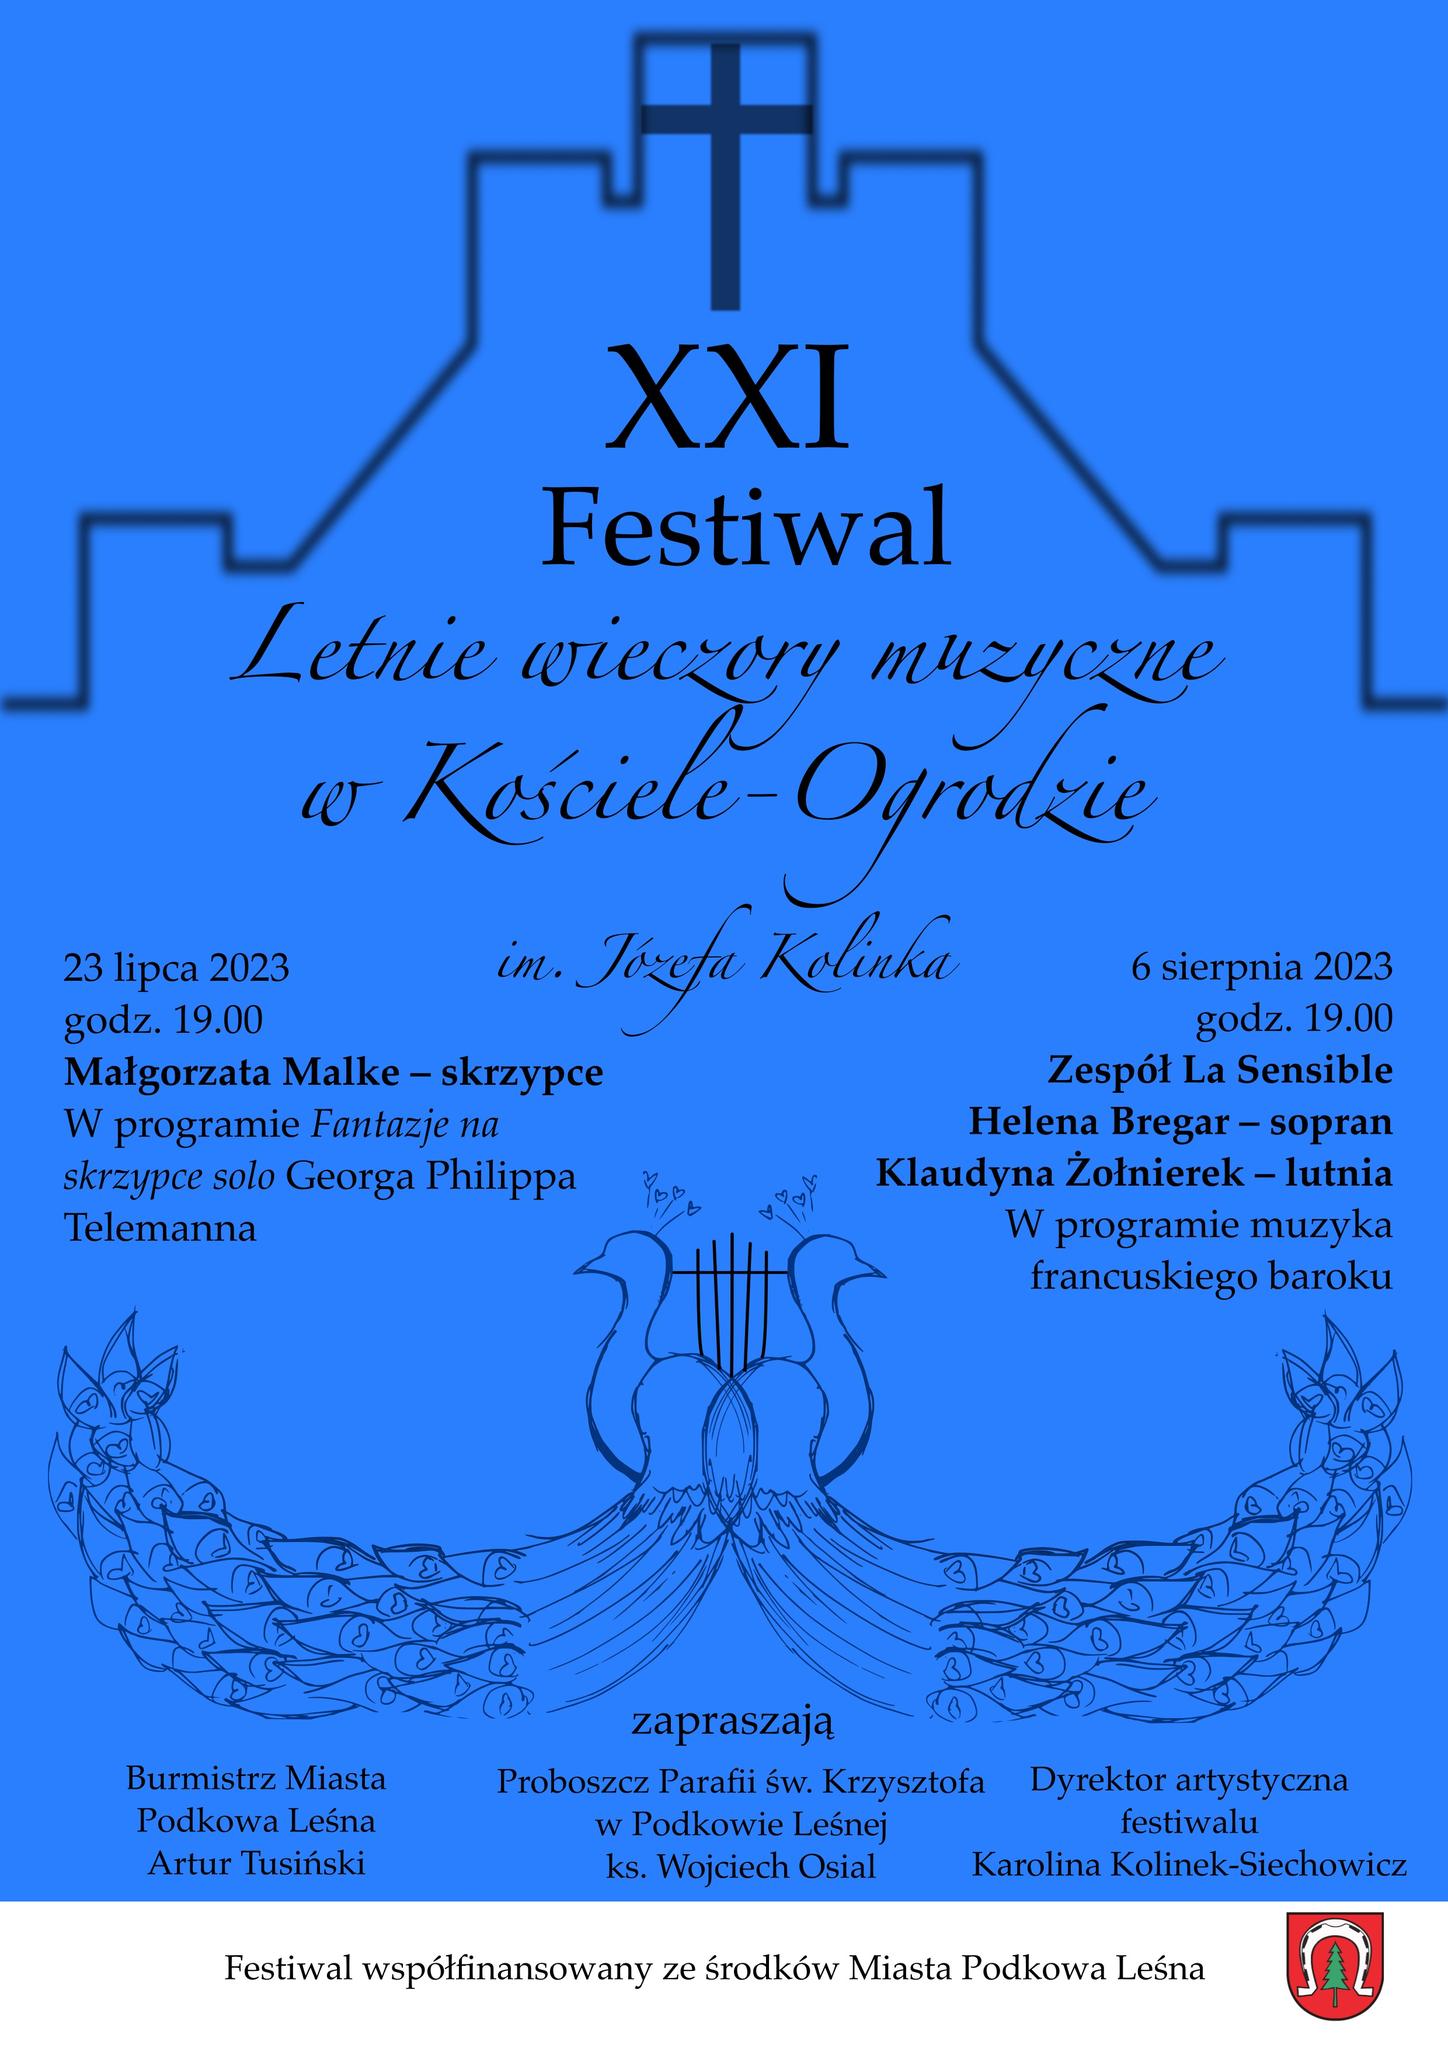 You are currently viewing Festiwal Letnie Wieczory Muzyczne w Kościele-Ogrodzie